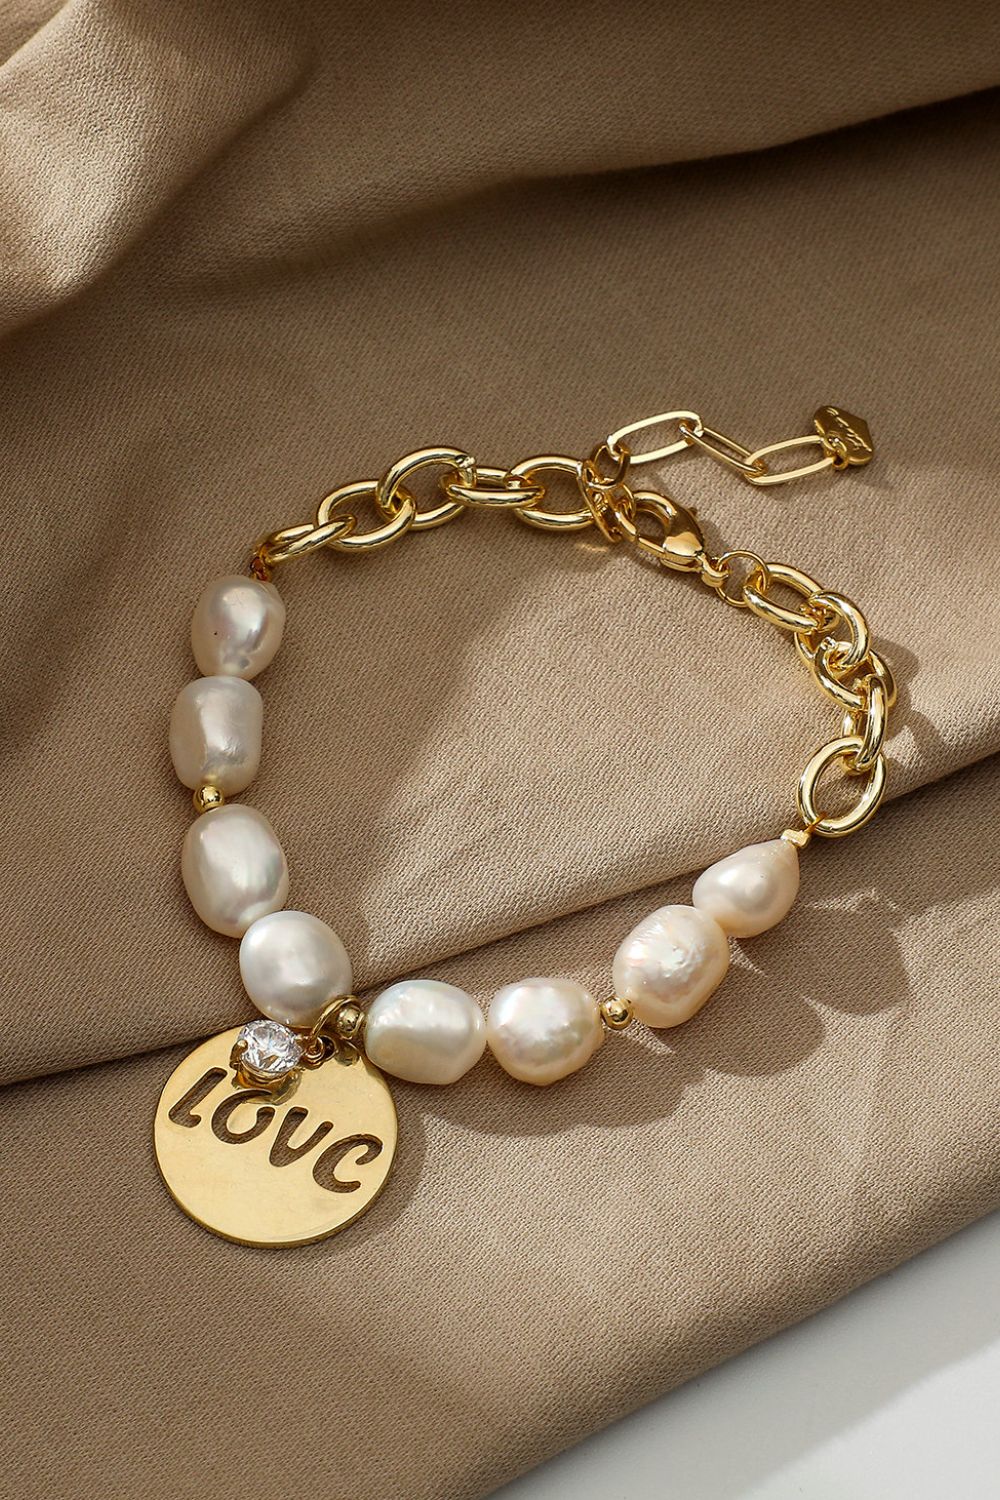 LOVE Freshwater Pearl Bracelet - Gold / One Size - Women’s Jewelry - Bracelets - 2 - 2024